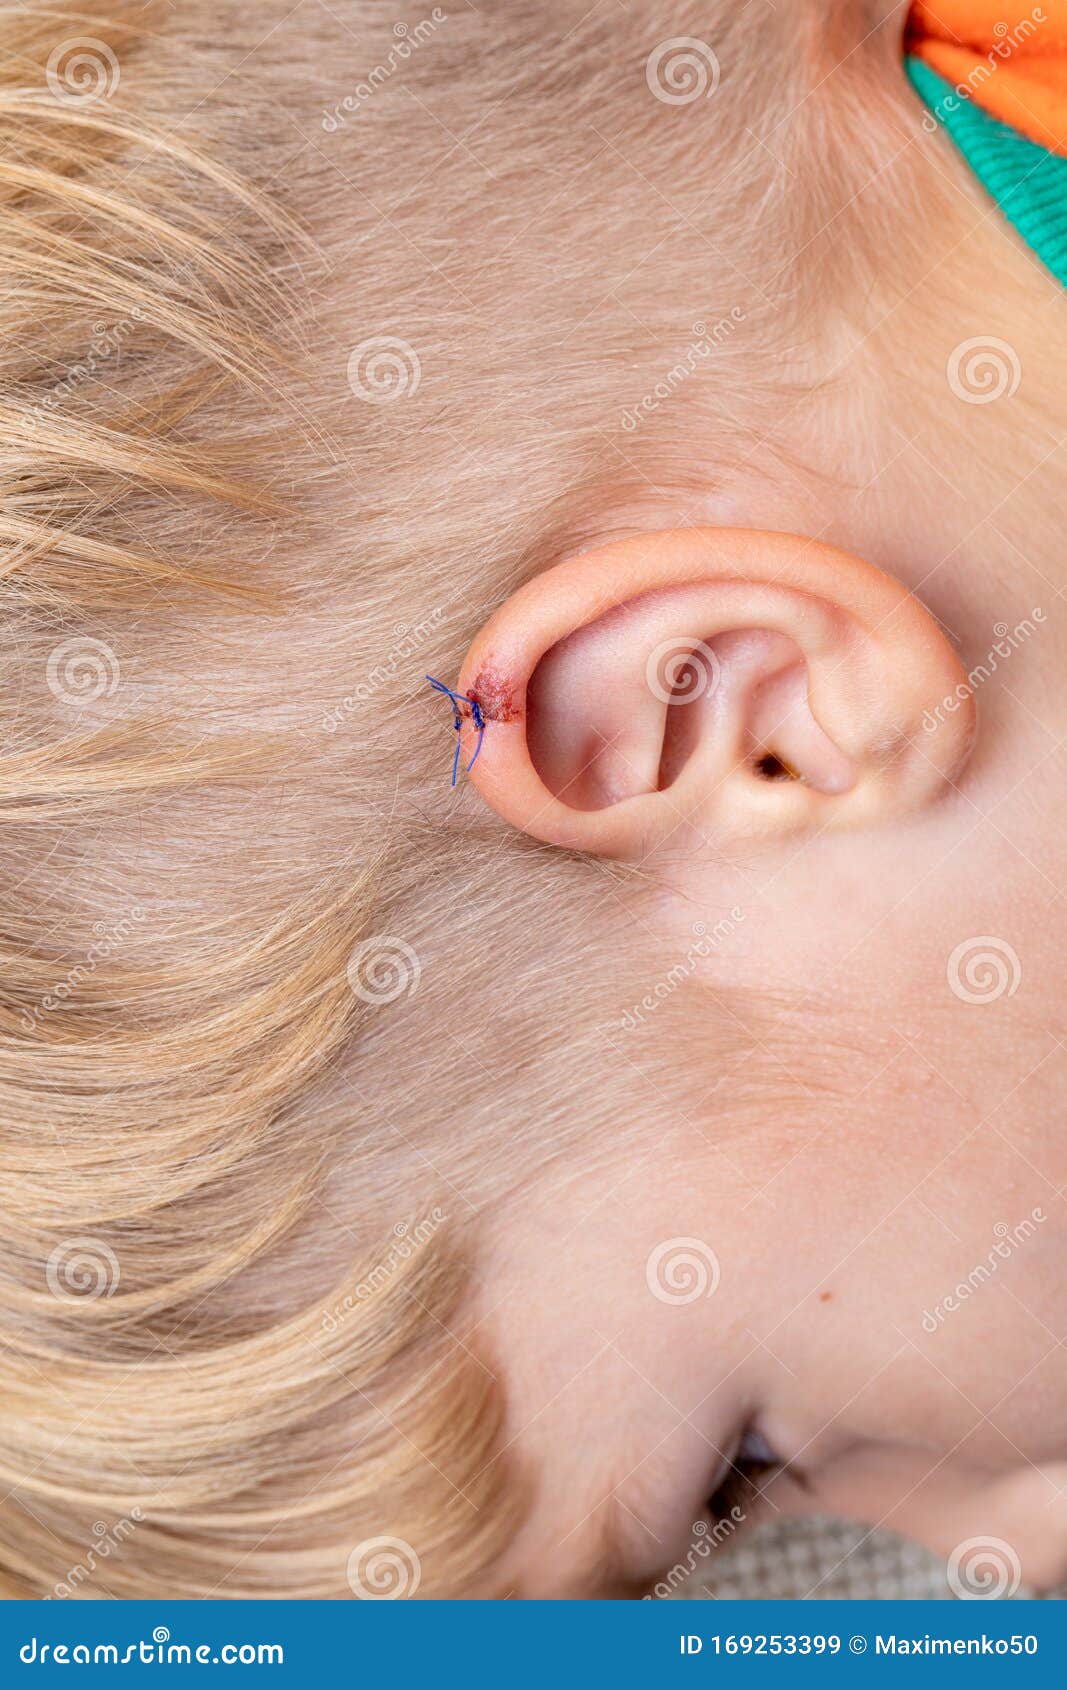 儿童的撕裂伤在幼童的耳朵上耳裂医疗 人身伤害和疼痛概念库存图片 图片包括有适应 子项